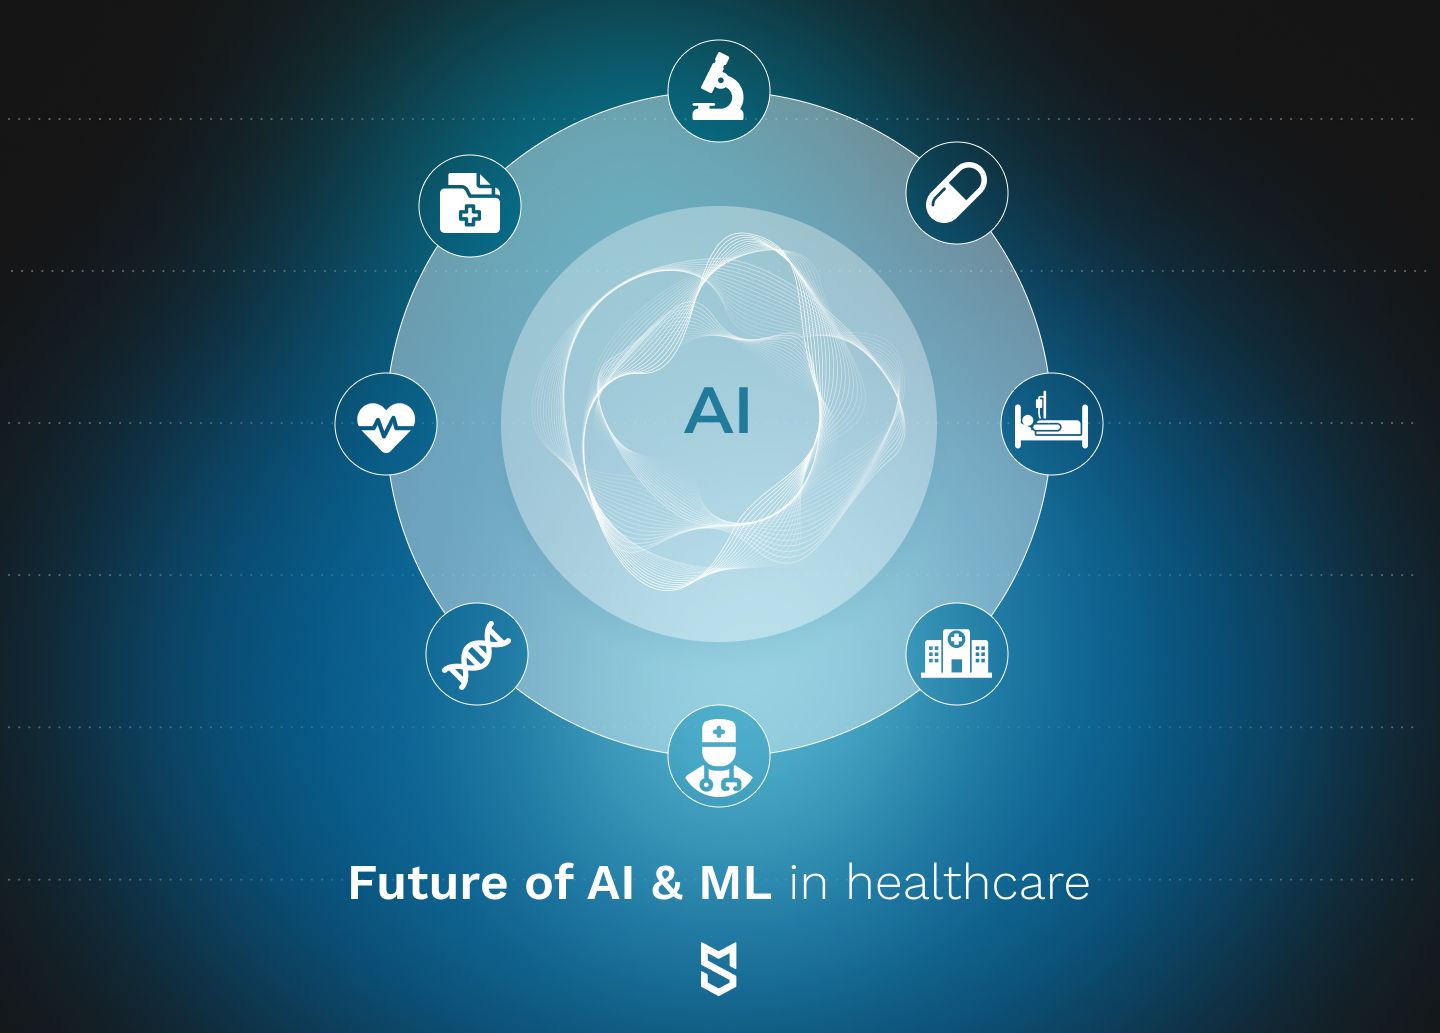 Future of AI & ML in healthcare